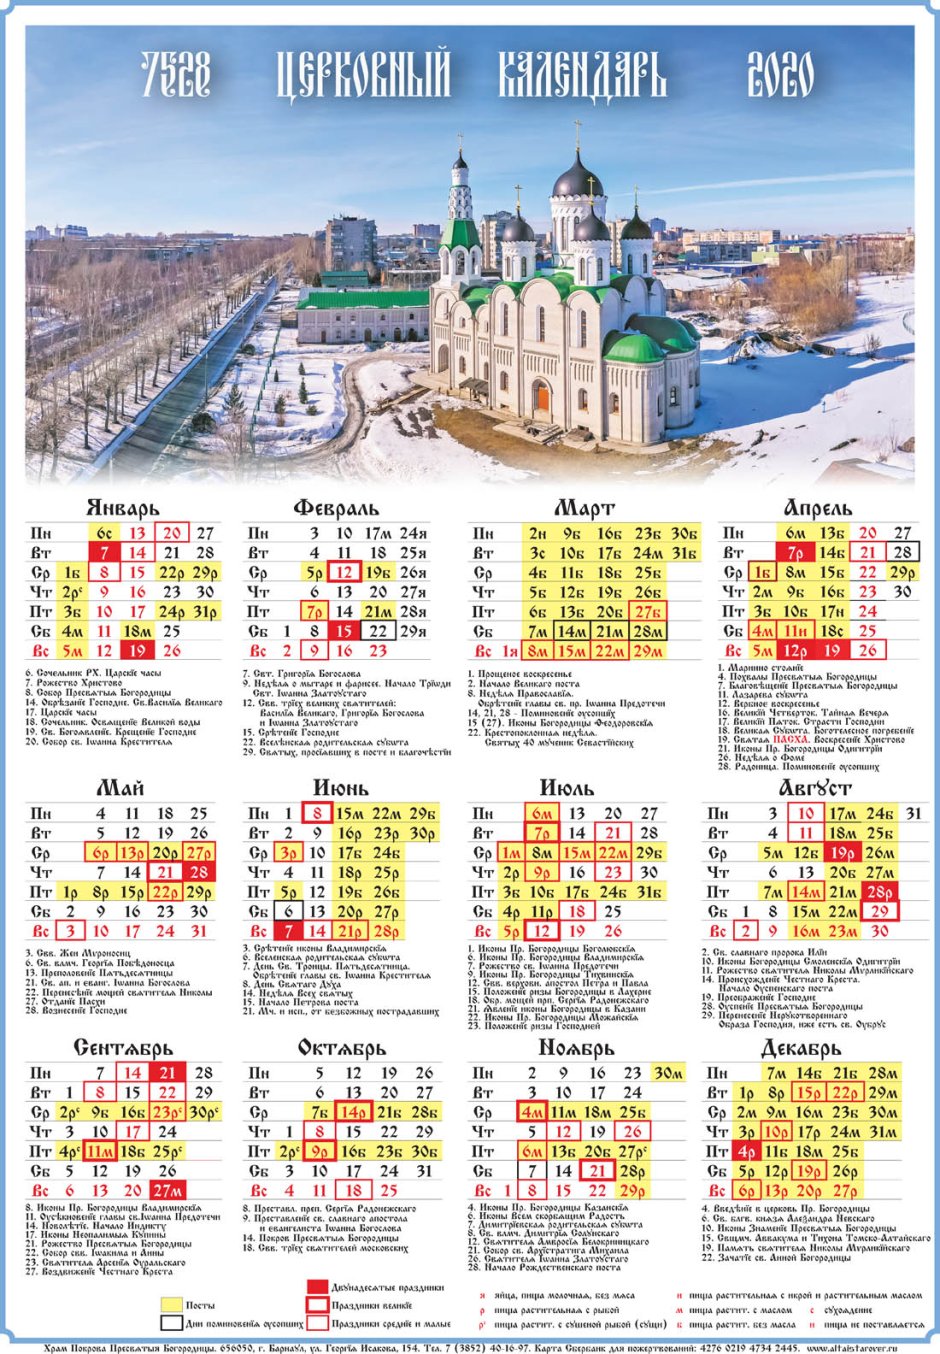 Церковный Старообрядческий календарь на 2021 год